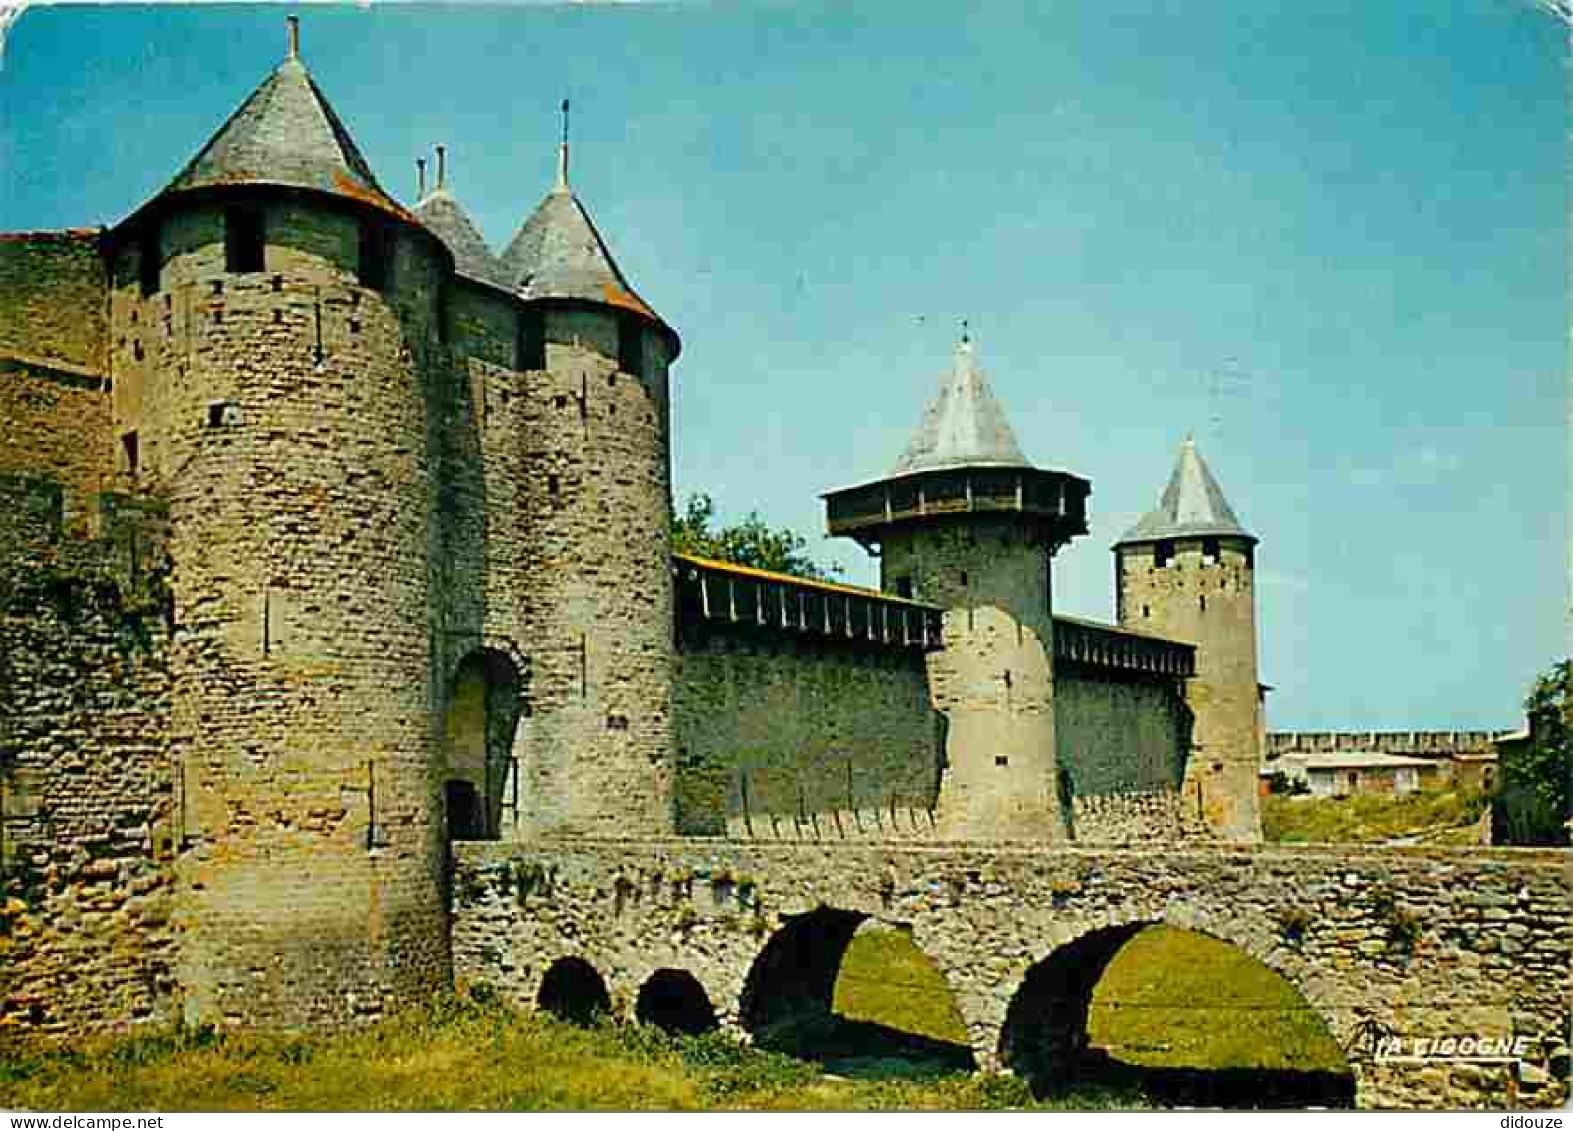 11 - Carcassonne - La Cité Médiévale - Les Remparts - CPM - Voir Scans Recto-Verso - Carcassonne